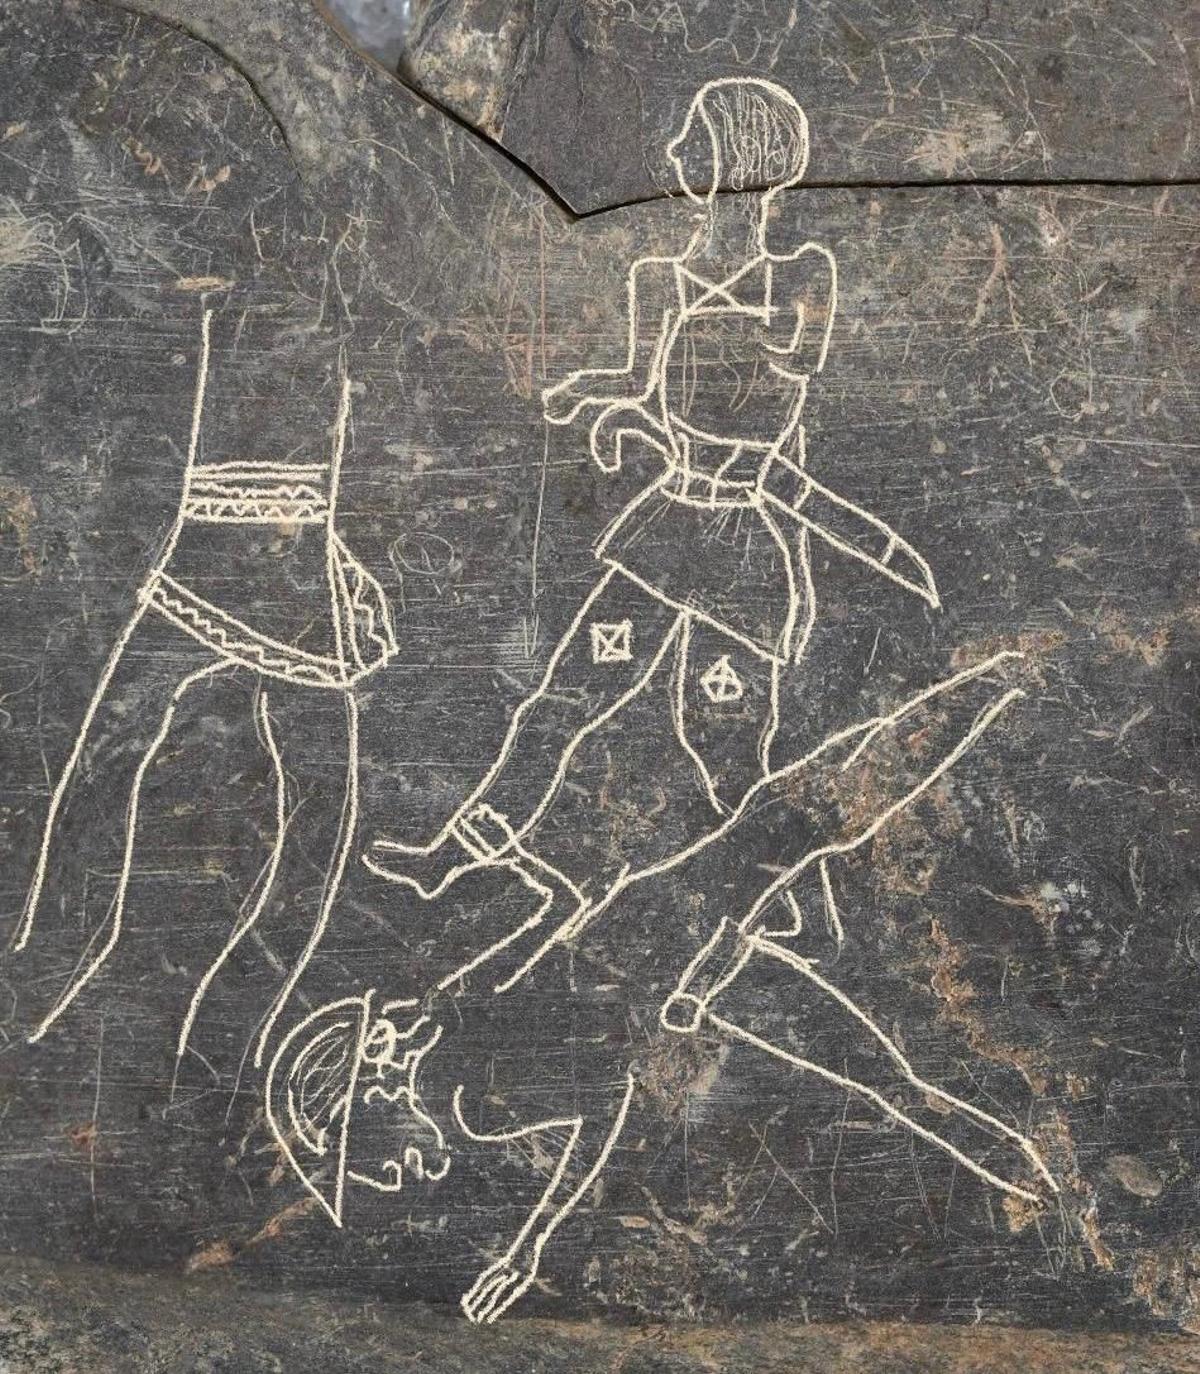 Imagen completa de las placa de pizarra que contienen escenas de guerreros del siglo VI-V a.C.